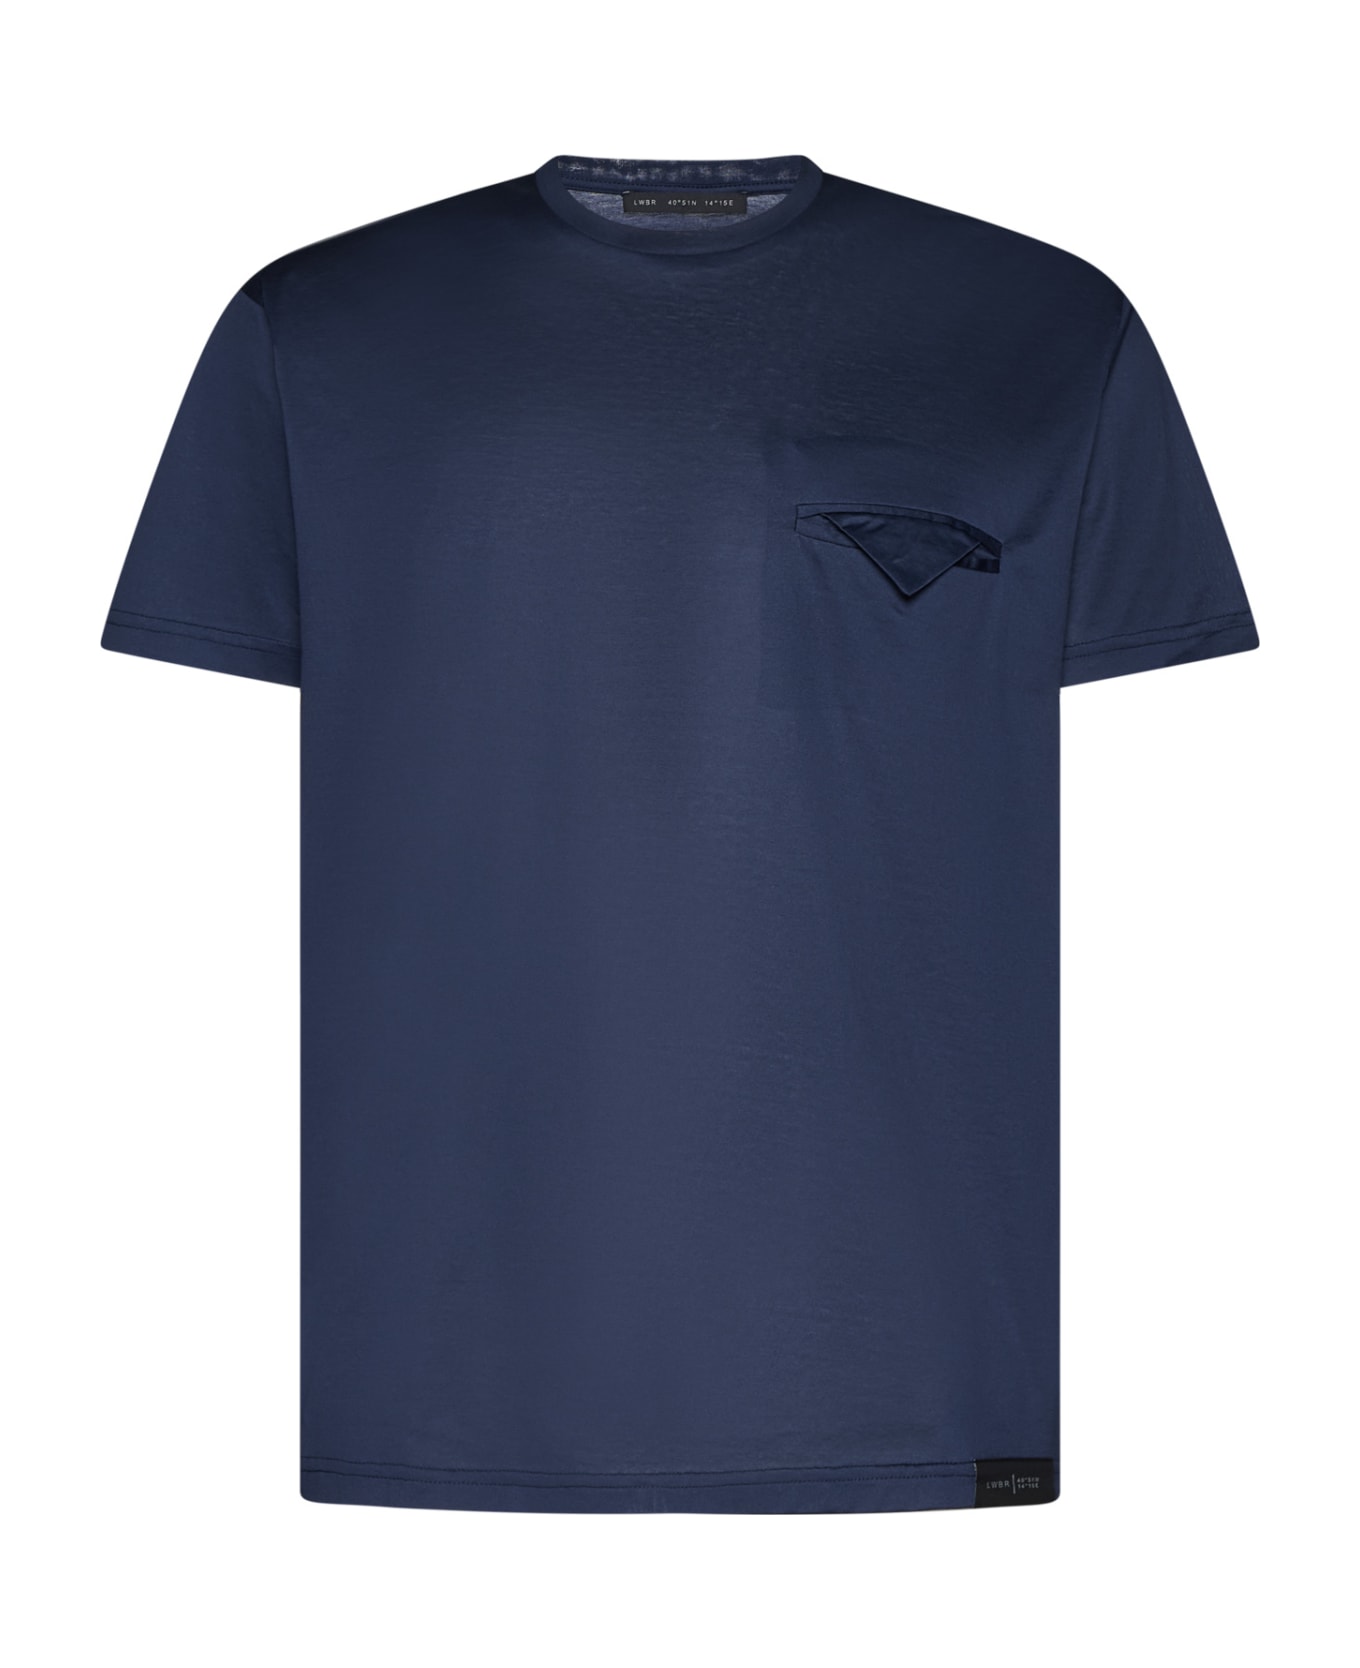 Low Brand T-Shirt - Dark navy